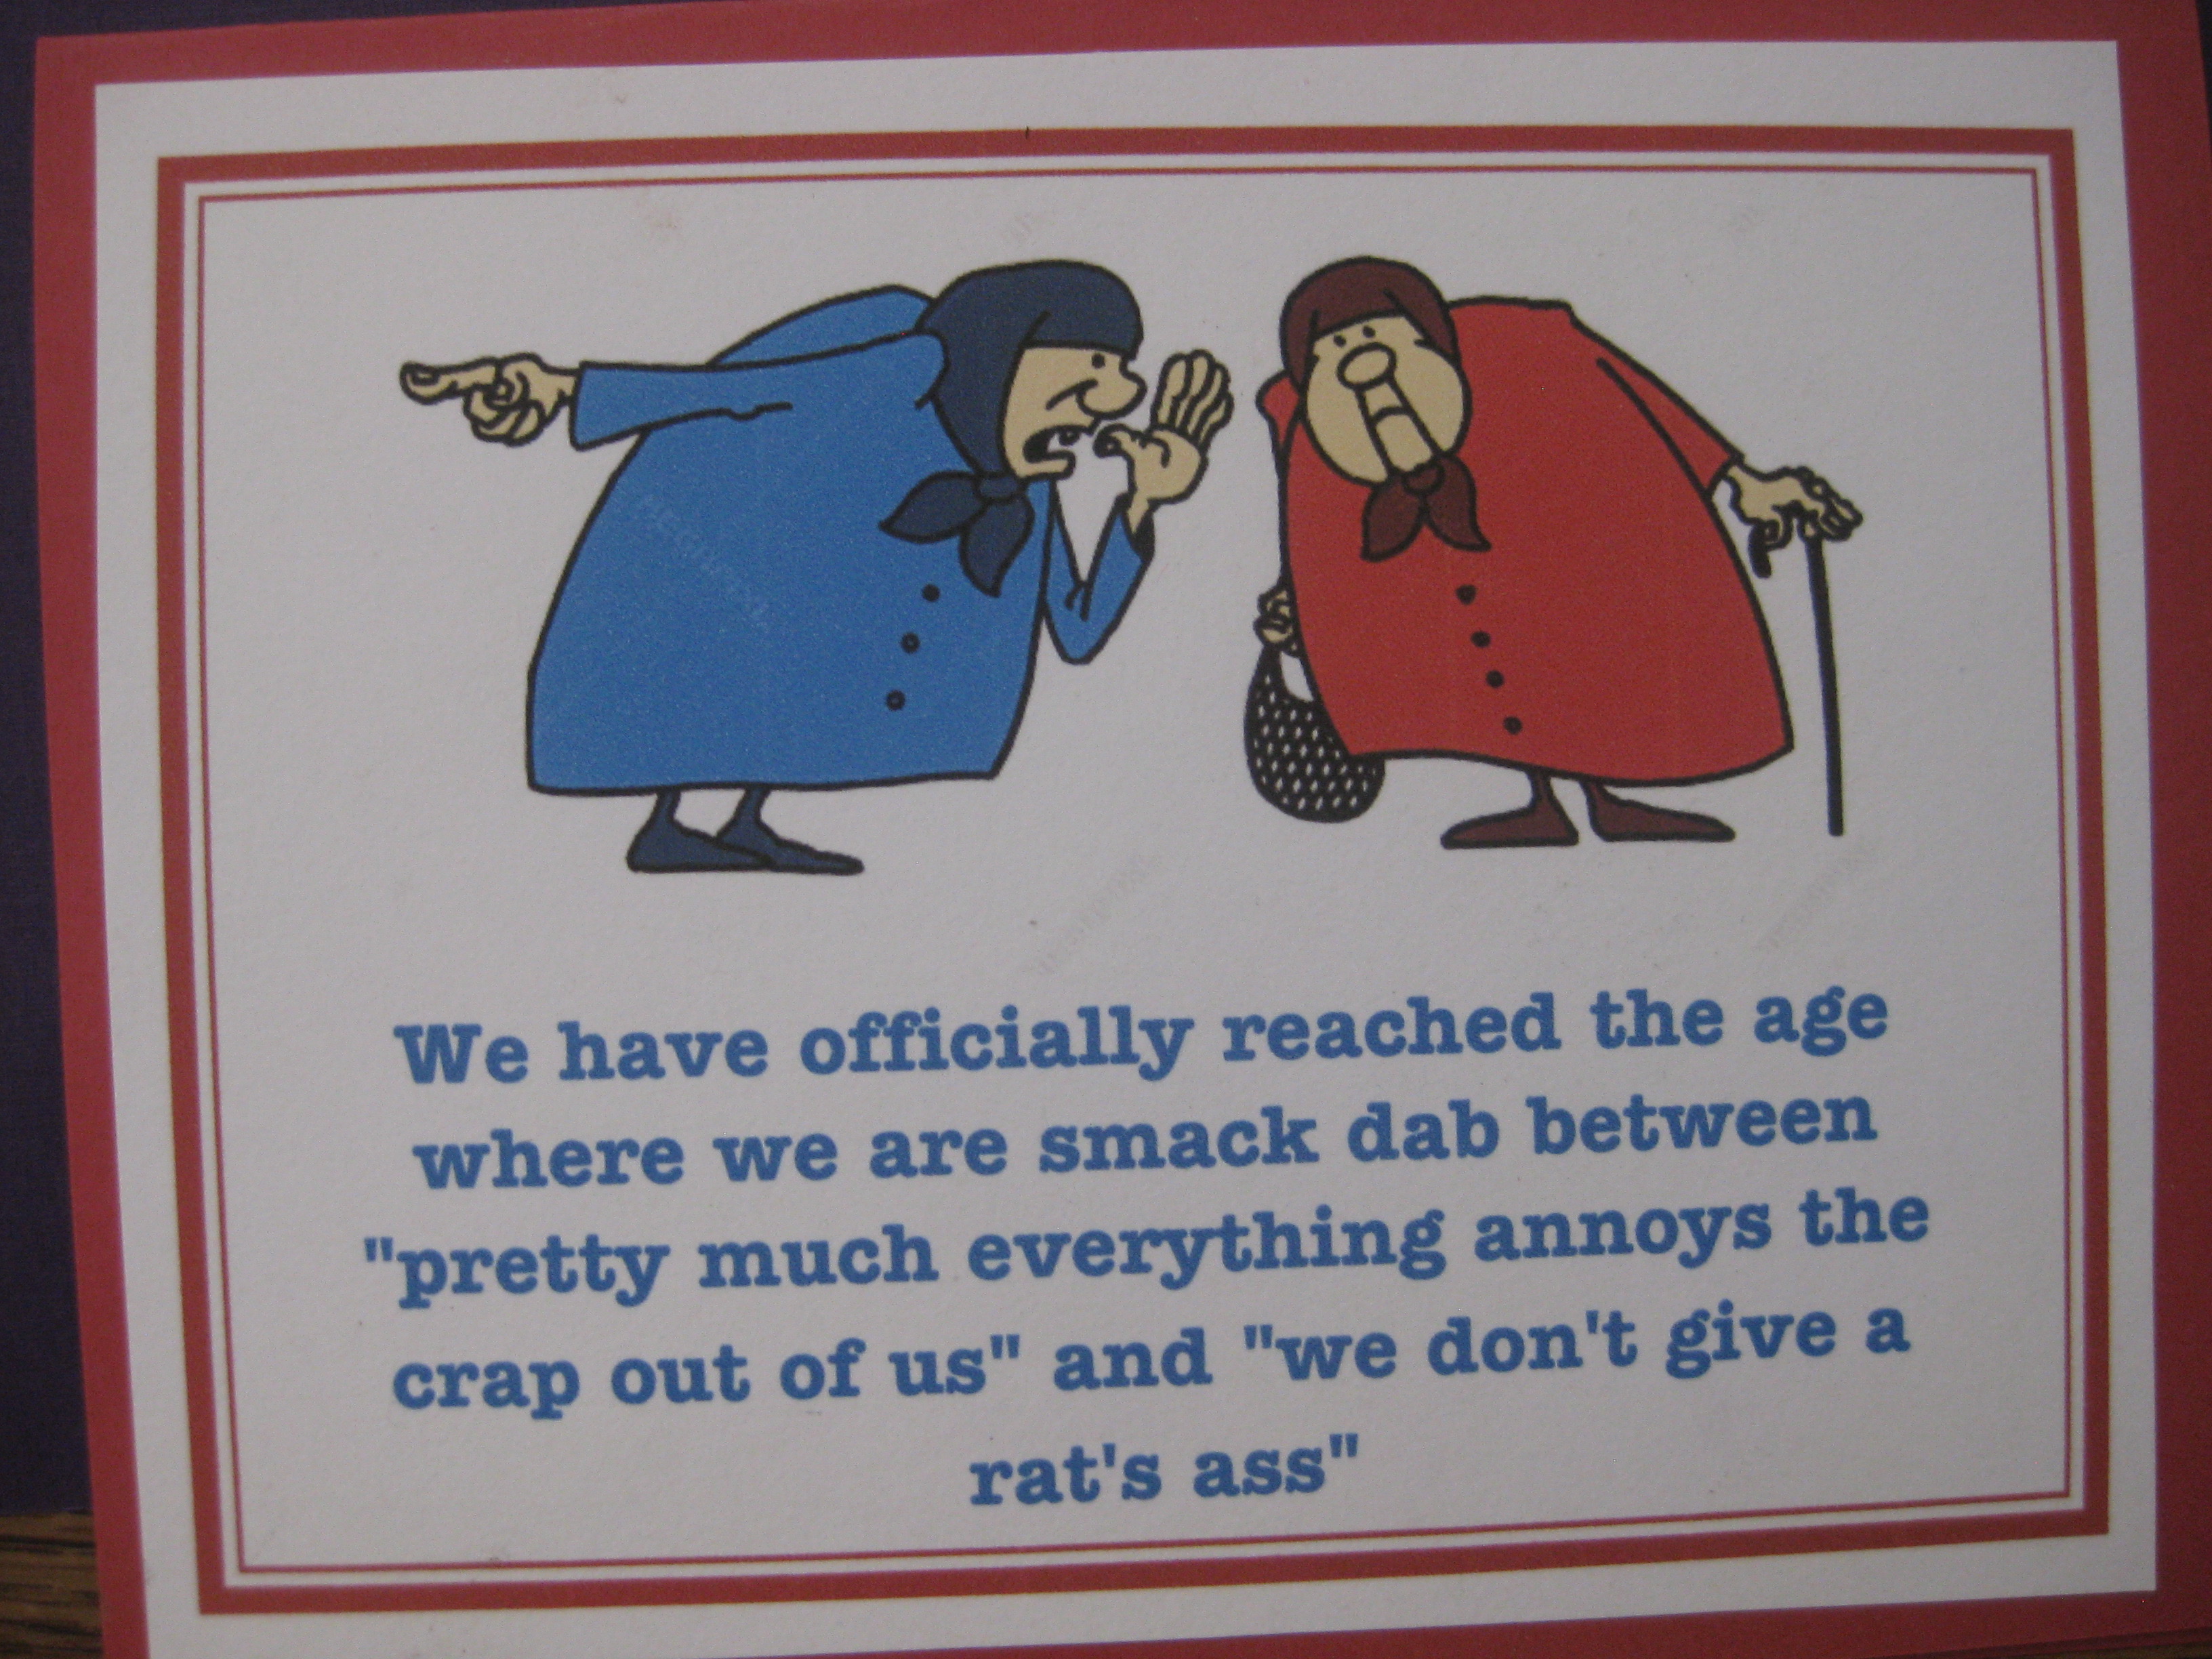 rat's ass